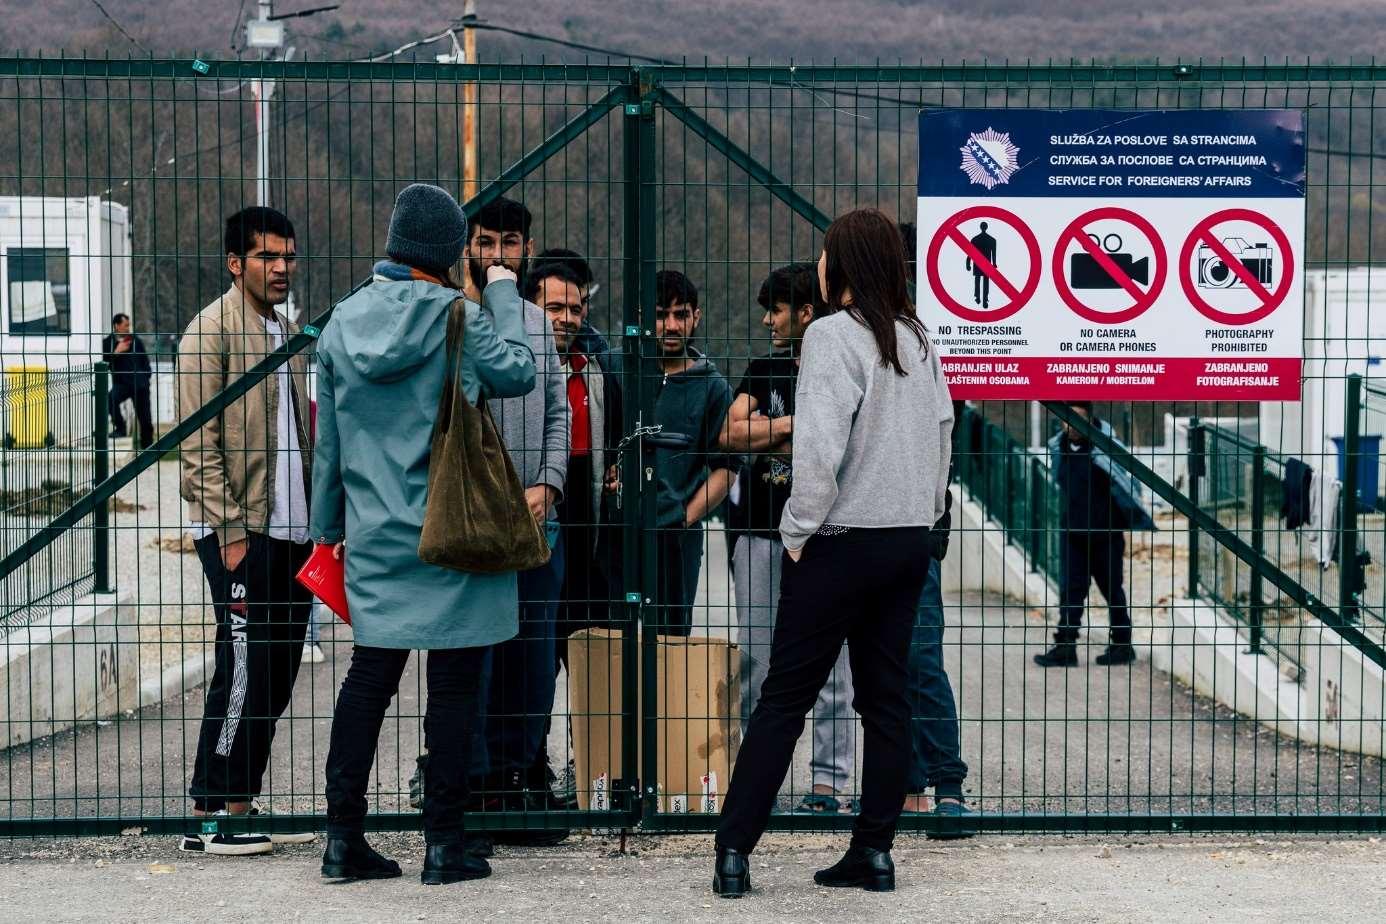 Mensche Sprechen mit Geflüchteten die hinter dem versperrten grünen Metallzaun stehen. Am Zaun ist ein Schild montiert, dass man keine Fotos machen darf.